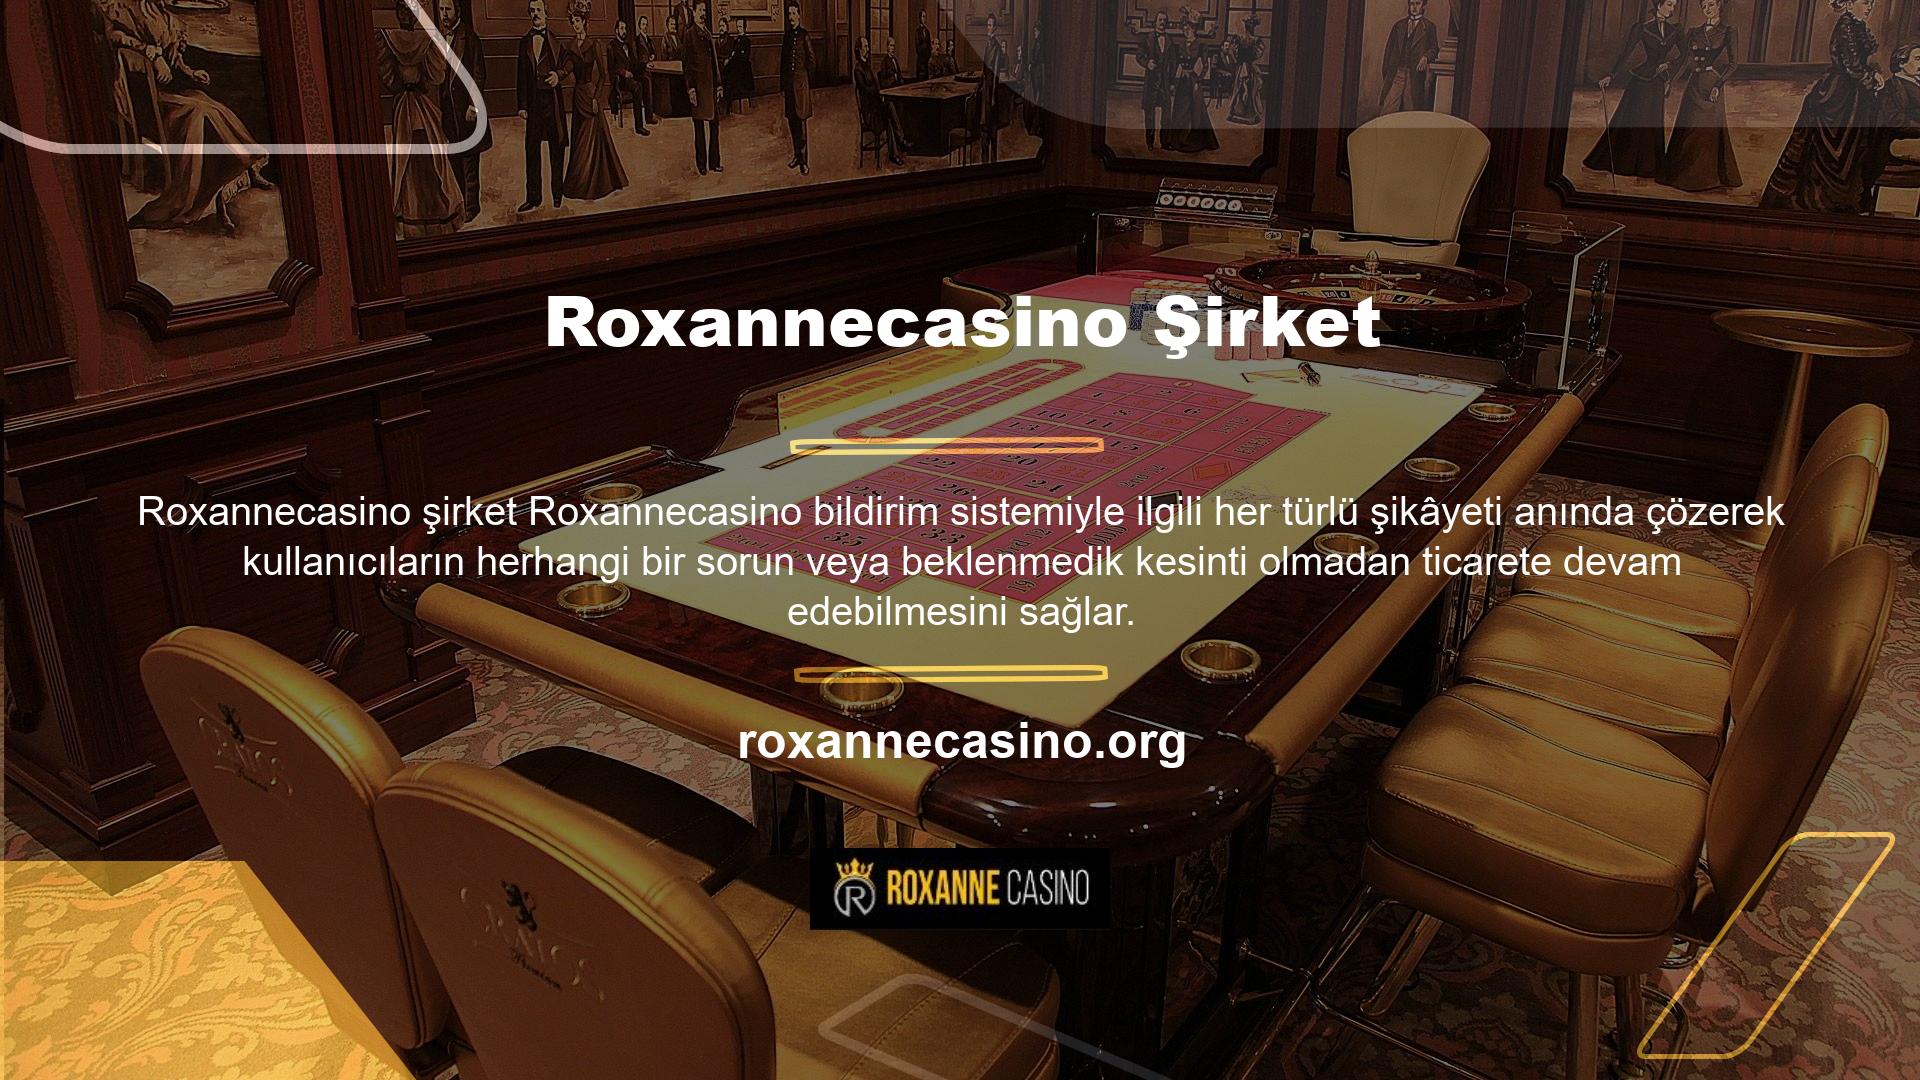 Roxannecasino, daha yüksek bir maliyetle, yüksek kaliteli ve bol miktarda canlı spor ve bahis içeriği sunuyor Site, oyuncuların tüm işlemlerini hızlı ve herhangi bir kısıtlama olmaksızın gerçekleştirmelerine olanak tanıyor Roxannecasino bahis ara yüzü kullanıcı dostudur ve teknoloji konusunda bilgili olmayanların bile sitede gezinmesine olanak tanır Roxannecasino Bahis sitesi, üyelerine günün veya gecenin her saatinde, karşılaşabilecekleri her türlü sorunda yardım alabilecekleri doğrudan bir destek hattı sunmaktadırRoxannecasino Bahisleri  ŞirketGerçek zamanlı bahislere katılabilirsiniz